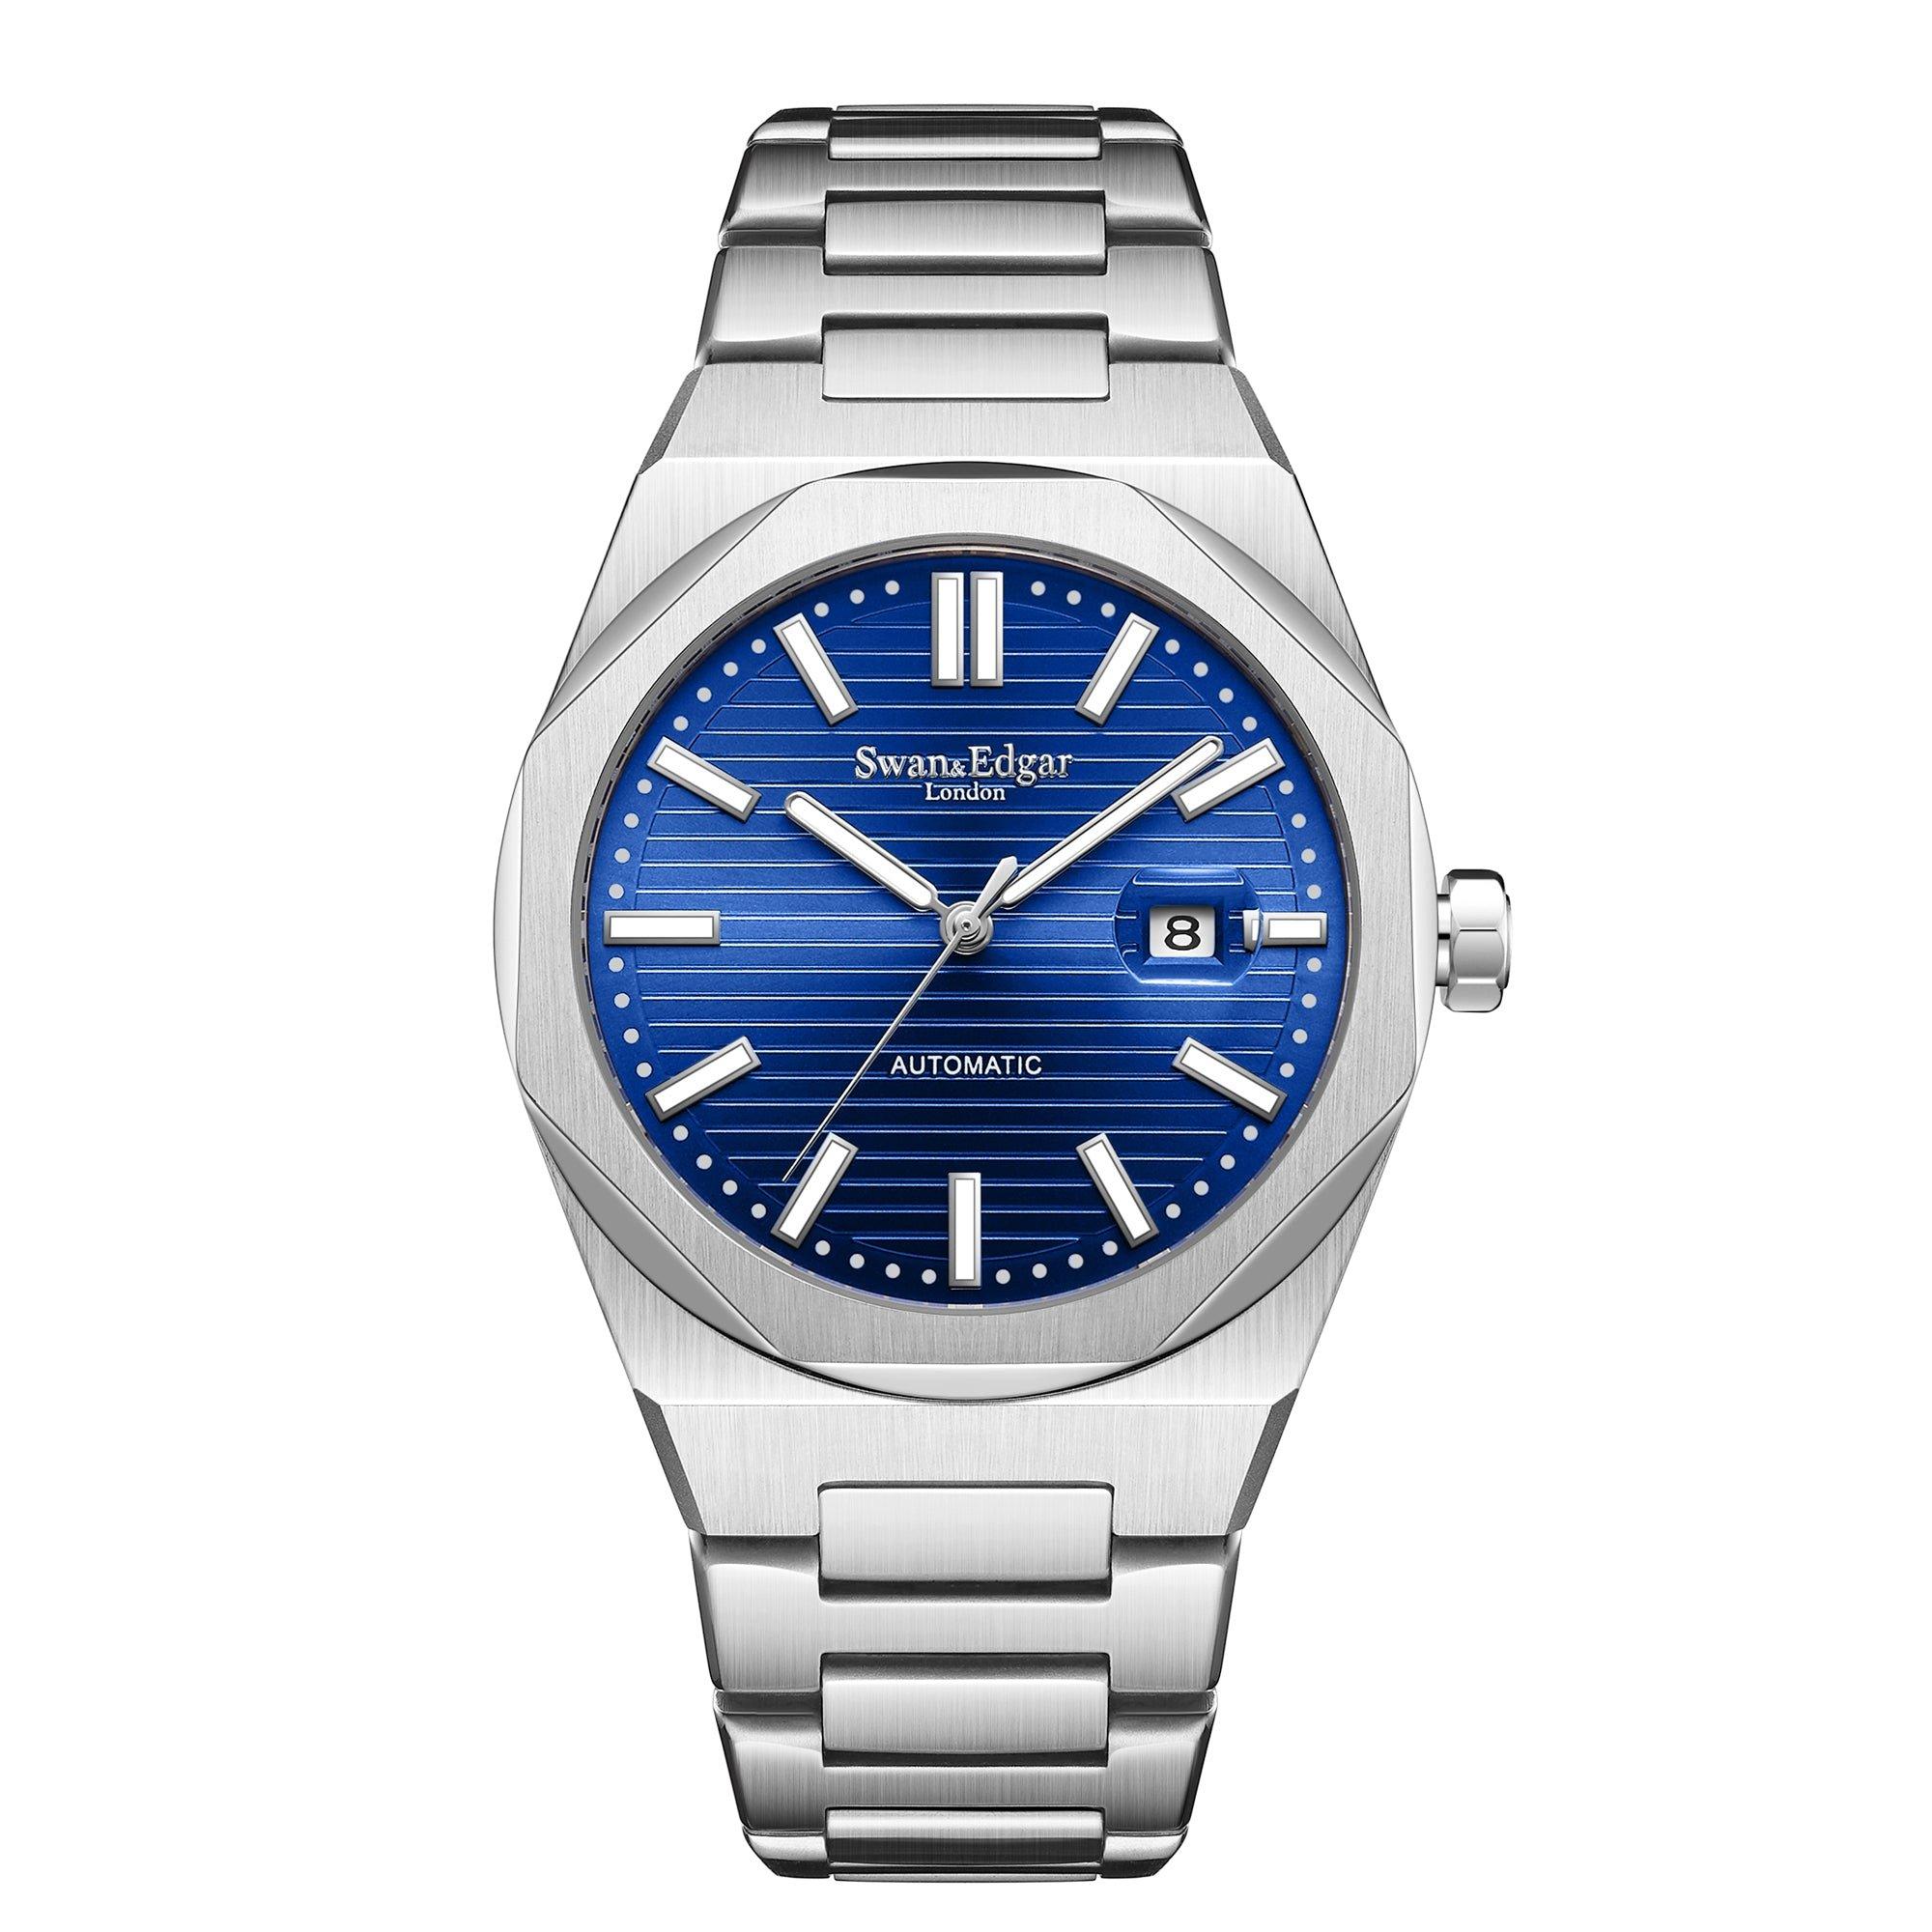 Автоматические часы Sovereine ручной сборки Swan & Edgar ограниченной серии, синий женские часы rhythm automatic a1405s02